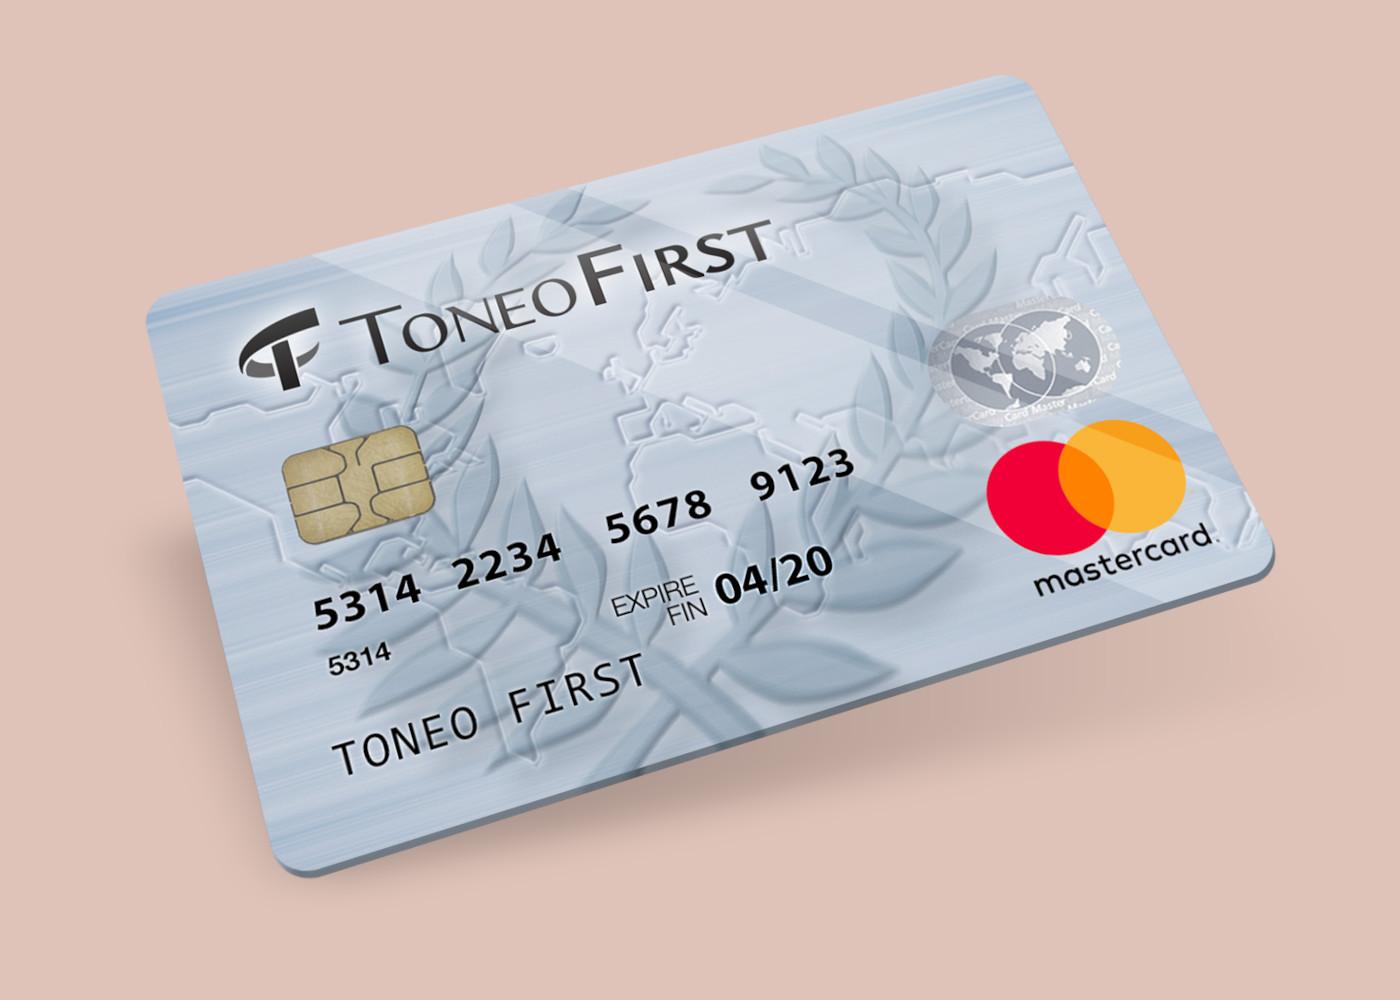 Toneo First Mastercard €15 Gift Card EU (19.63$)